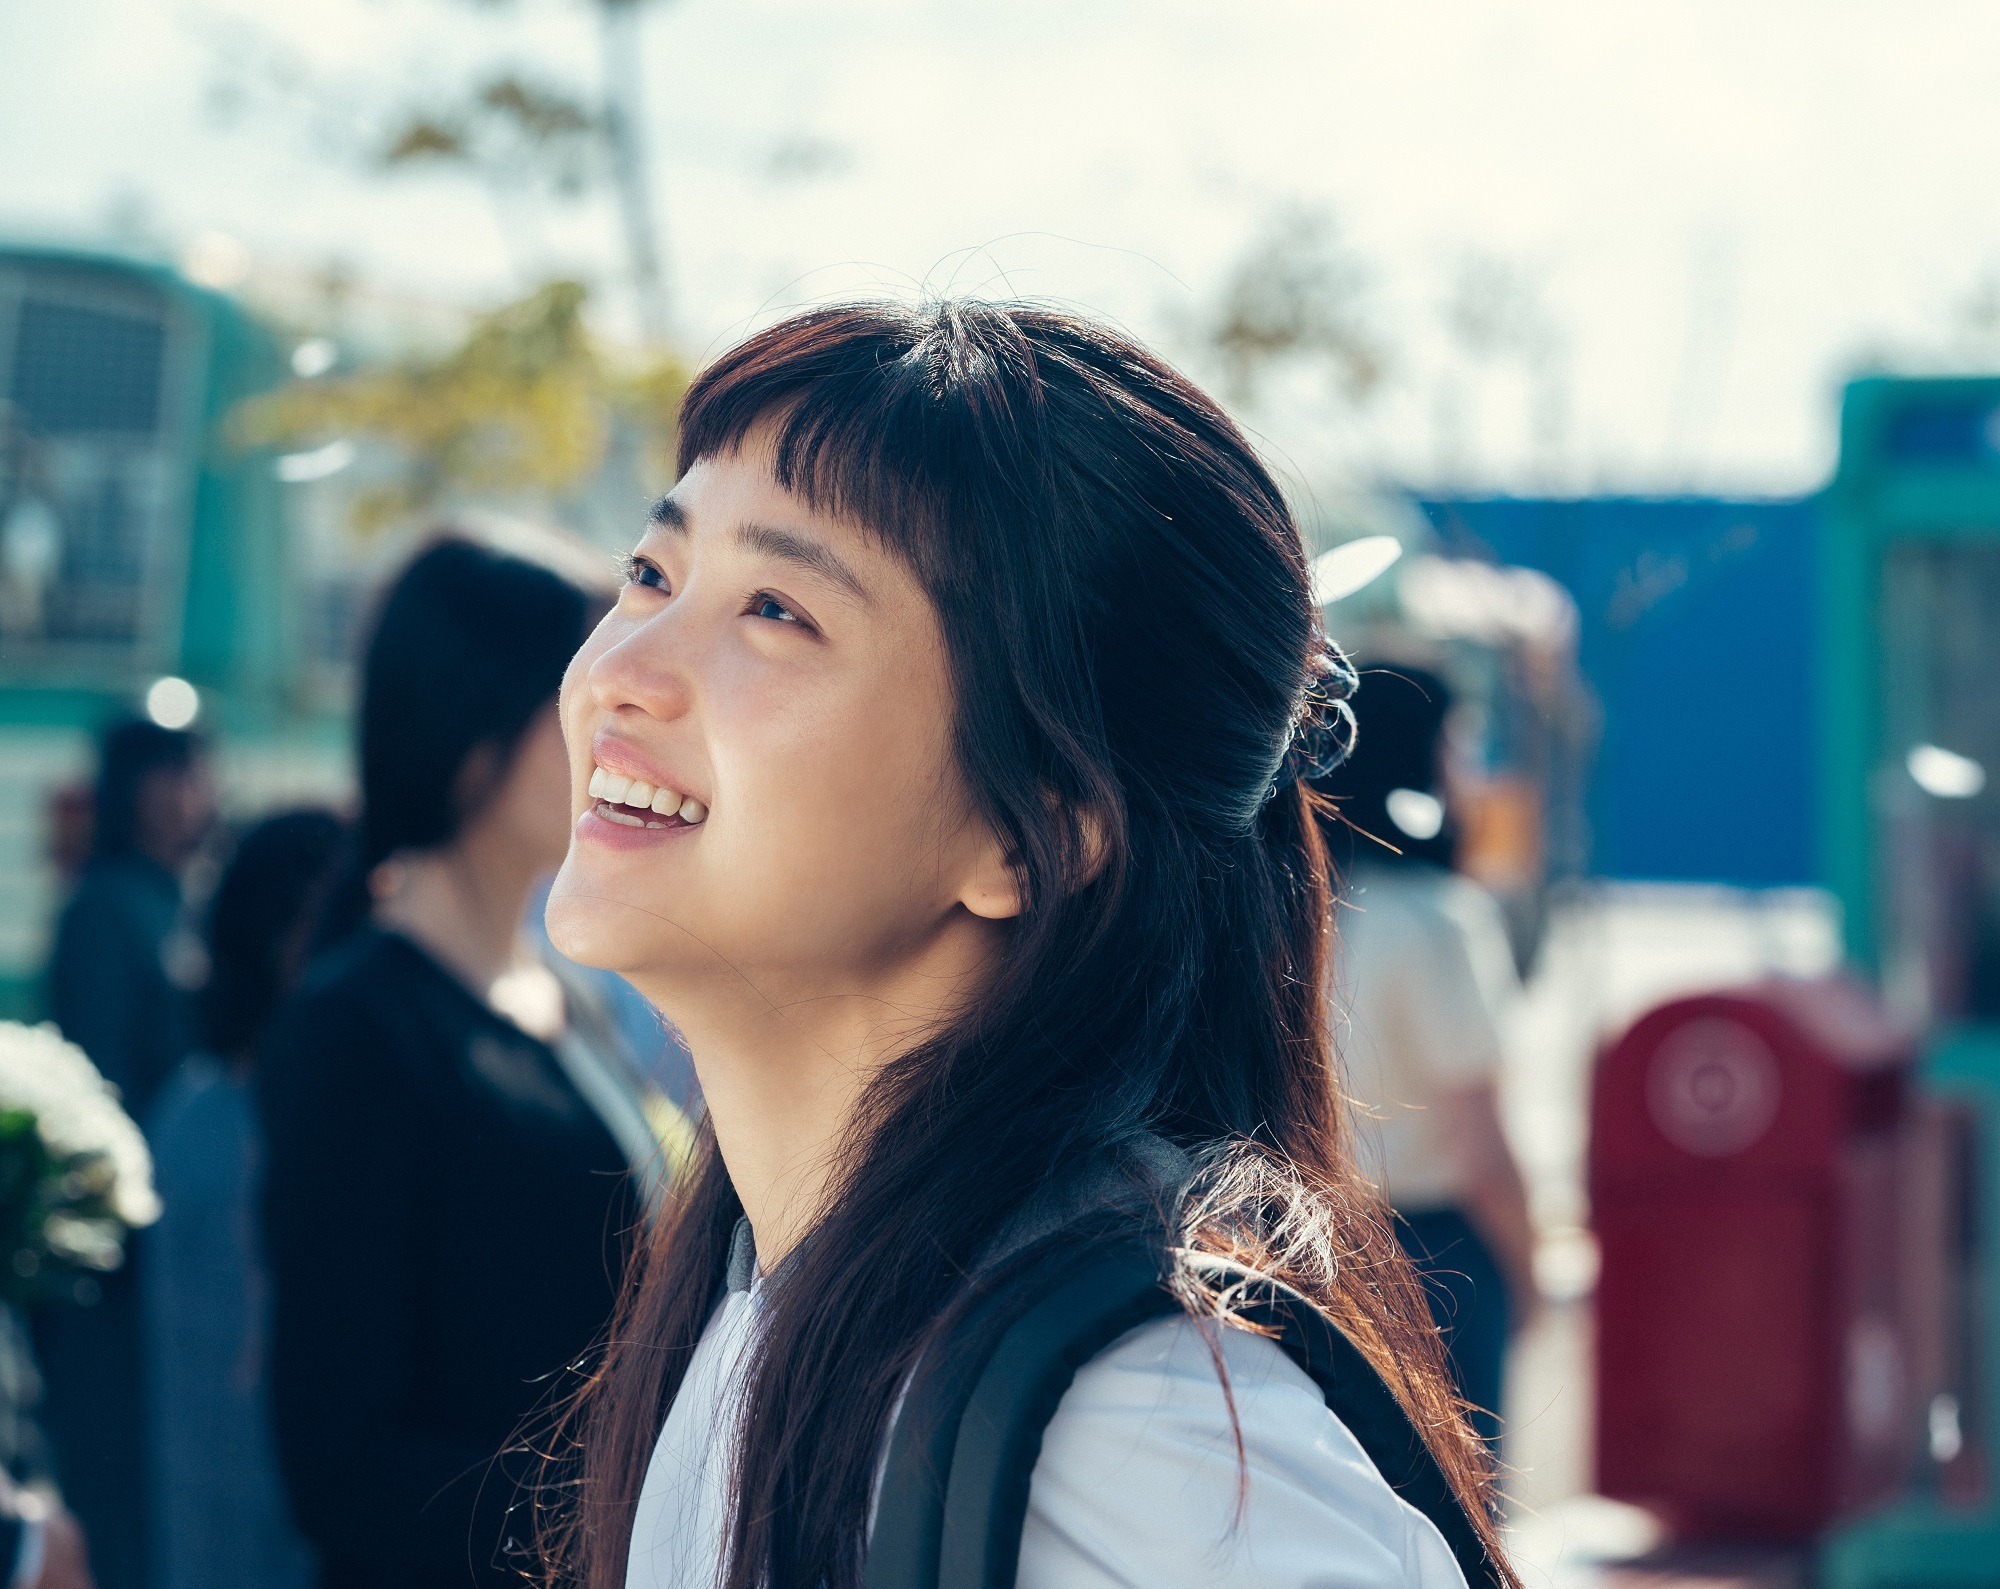 韓国ドラマ『二十五、二十一』あらすじ・感想 キム・テリの弾ける笑顔が視聴者を魅了 | RBB TODAY